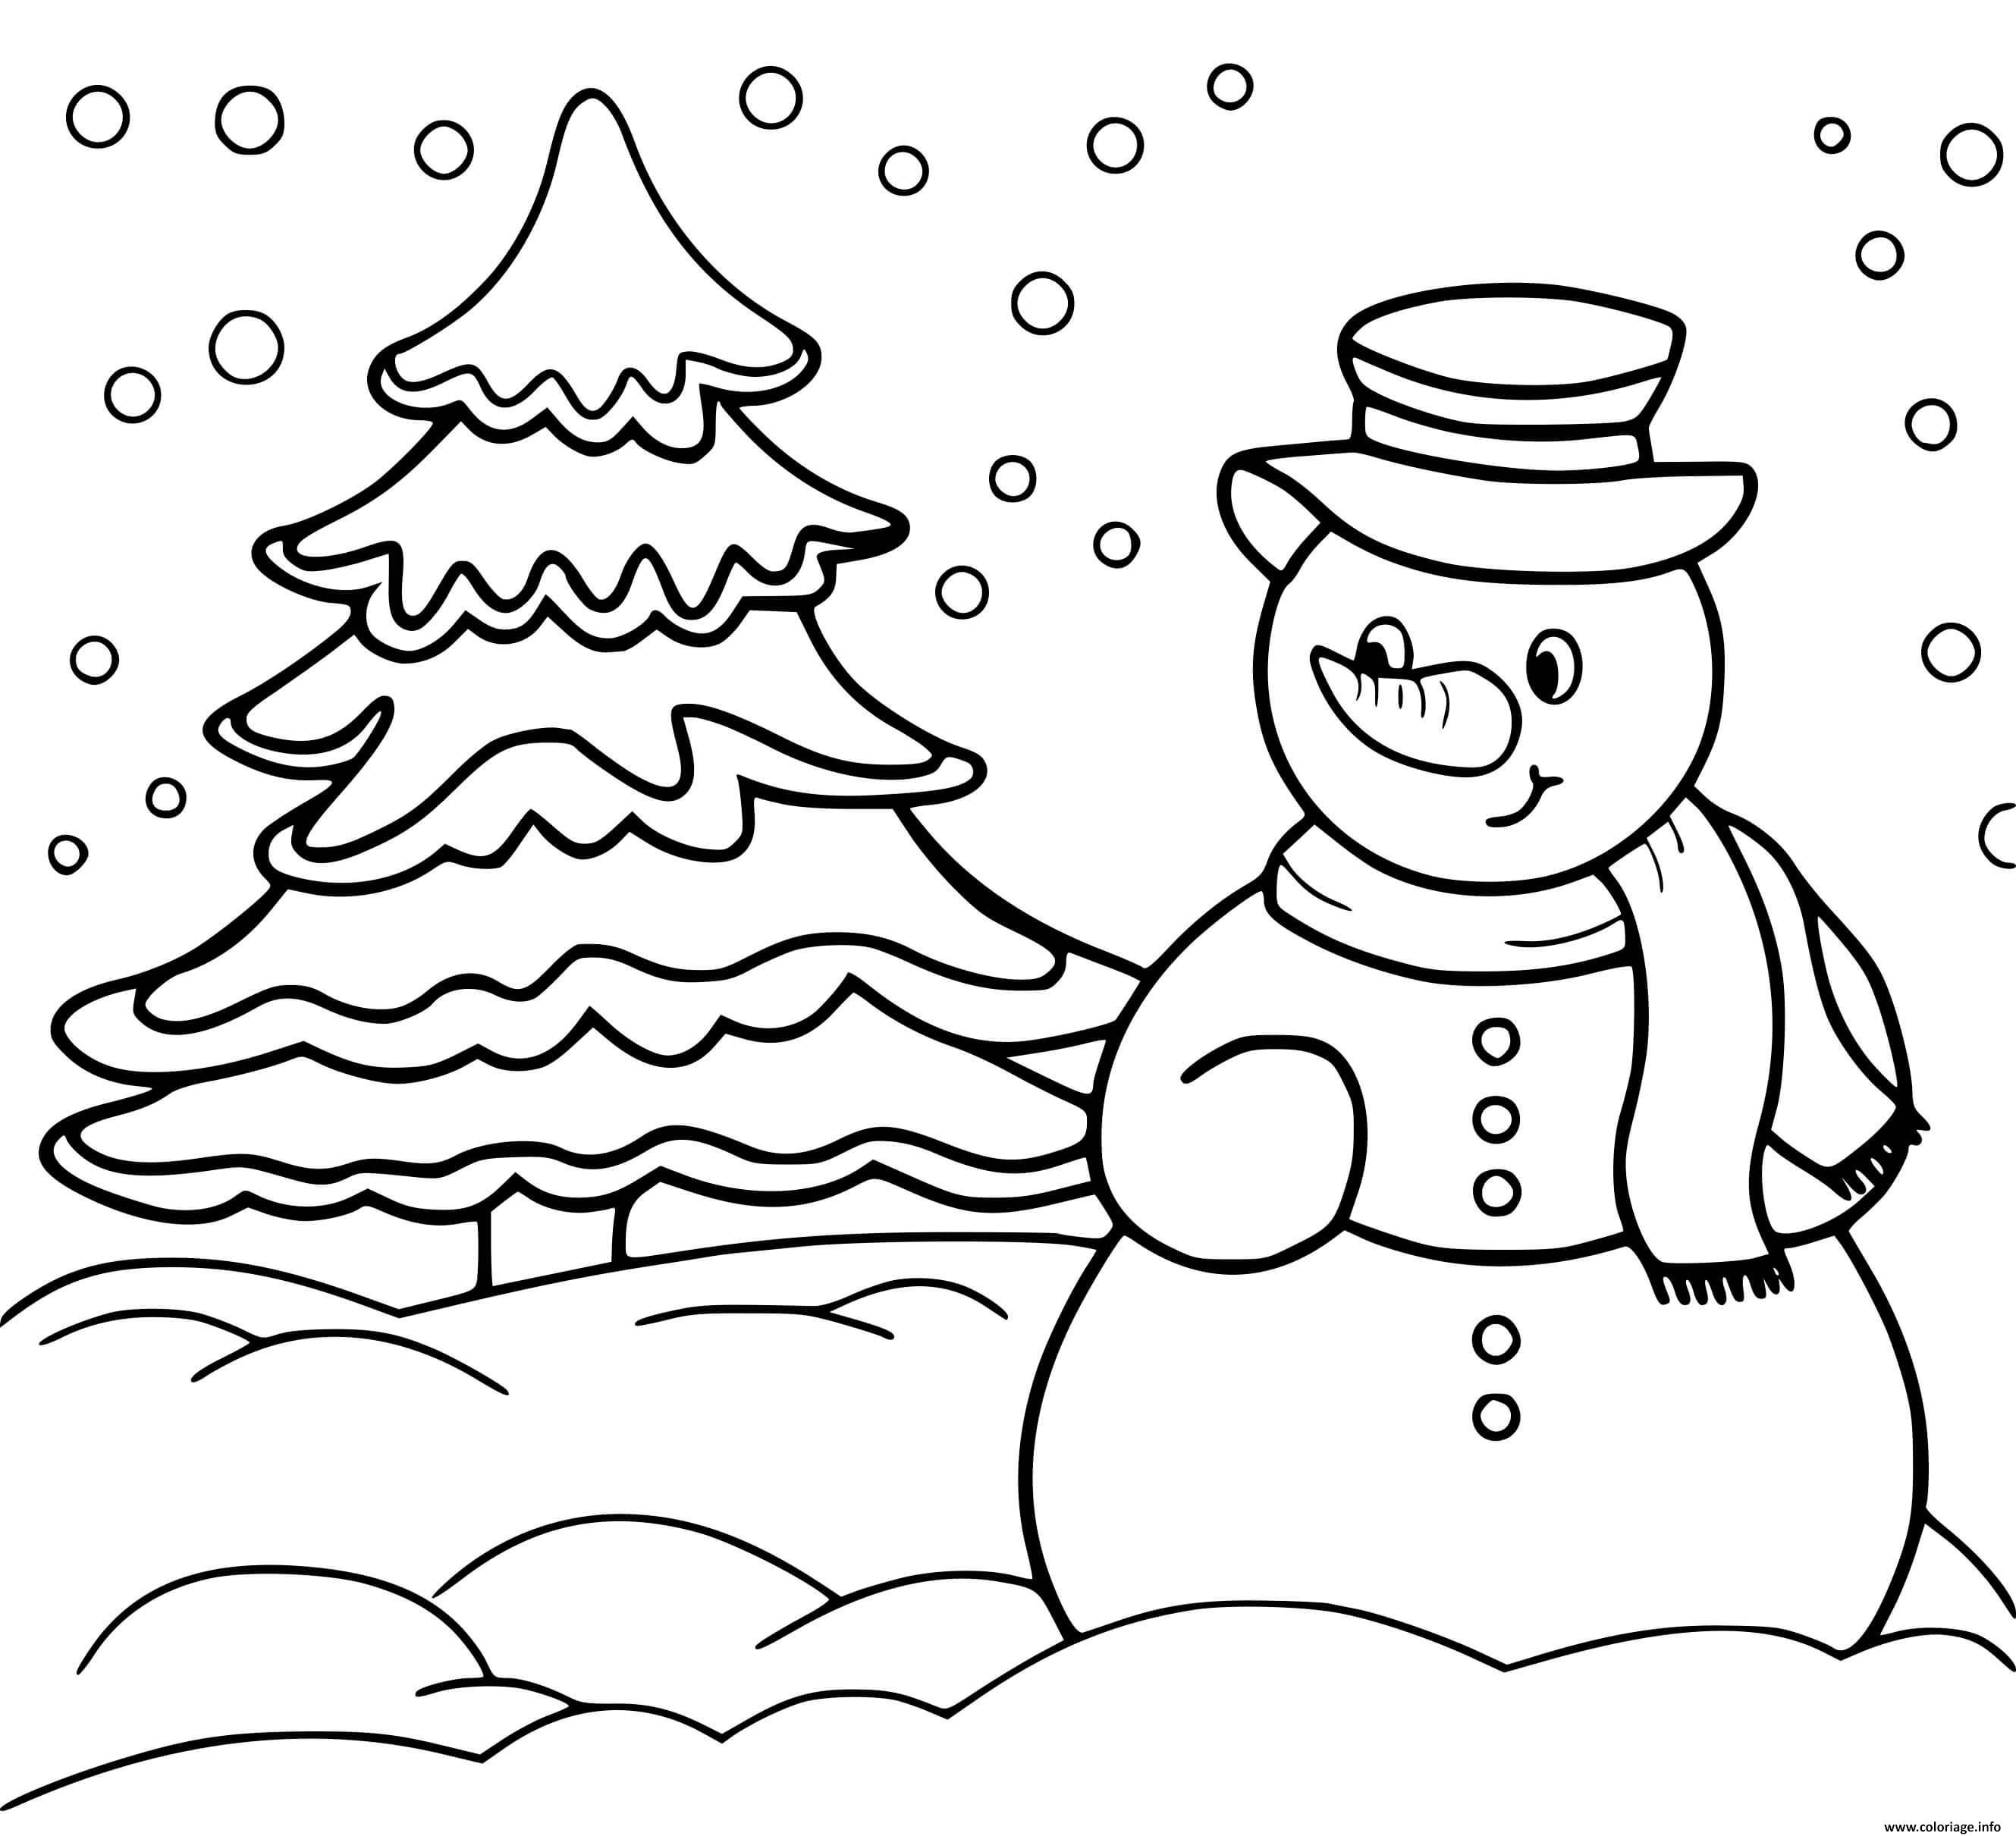 Раскраска Снеговик, новогодняя елка и подарки